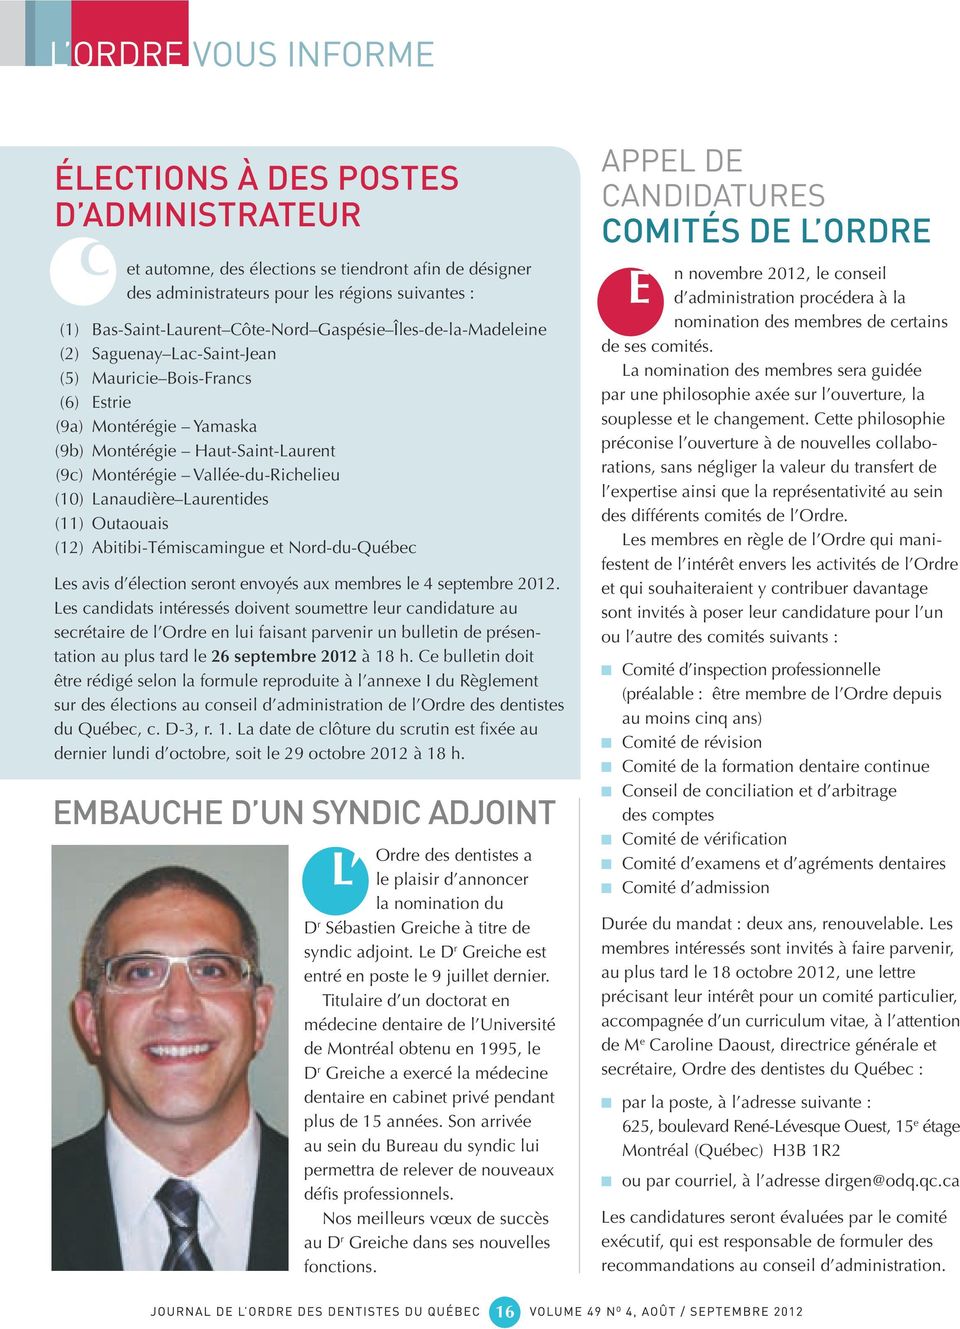 Lanaudière Laurentides (11) Outaouais (12) Abitibi-Témiscamingue et Nord-du-Québec Les avis d élection seront envoyés aux membres le 4 septembre 2012.